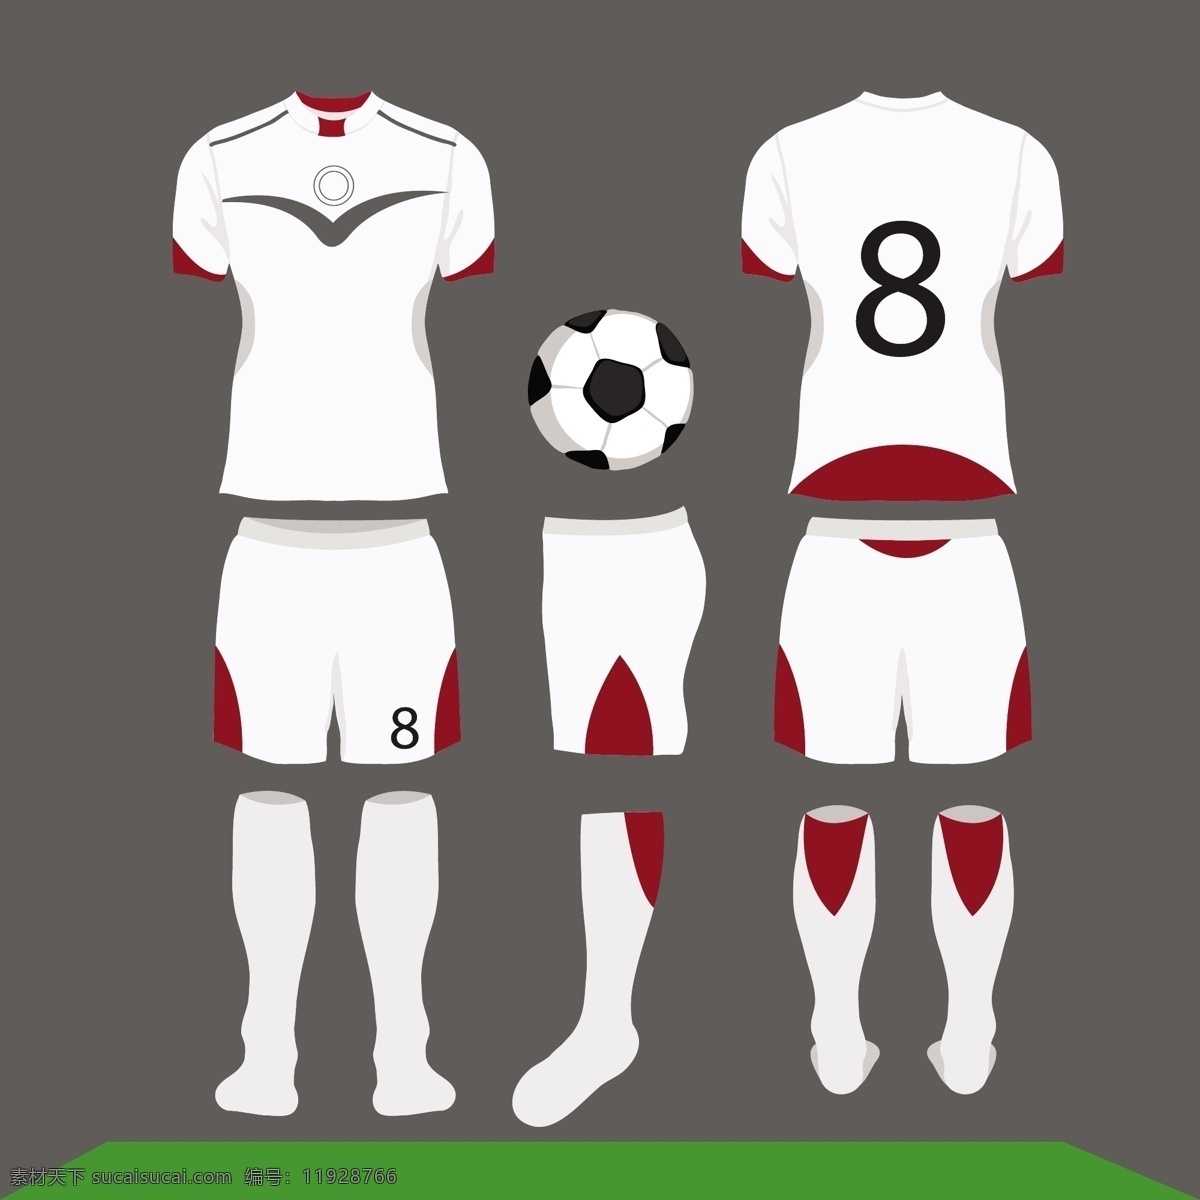 白色 红色 足球 球衣 体育 运动队 t恤 球 服装 玩 白 均匀 裤子 短裤 套装 短 发球 足球队 灰色